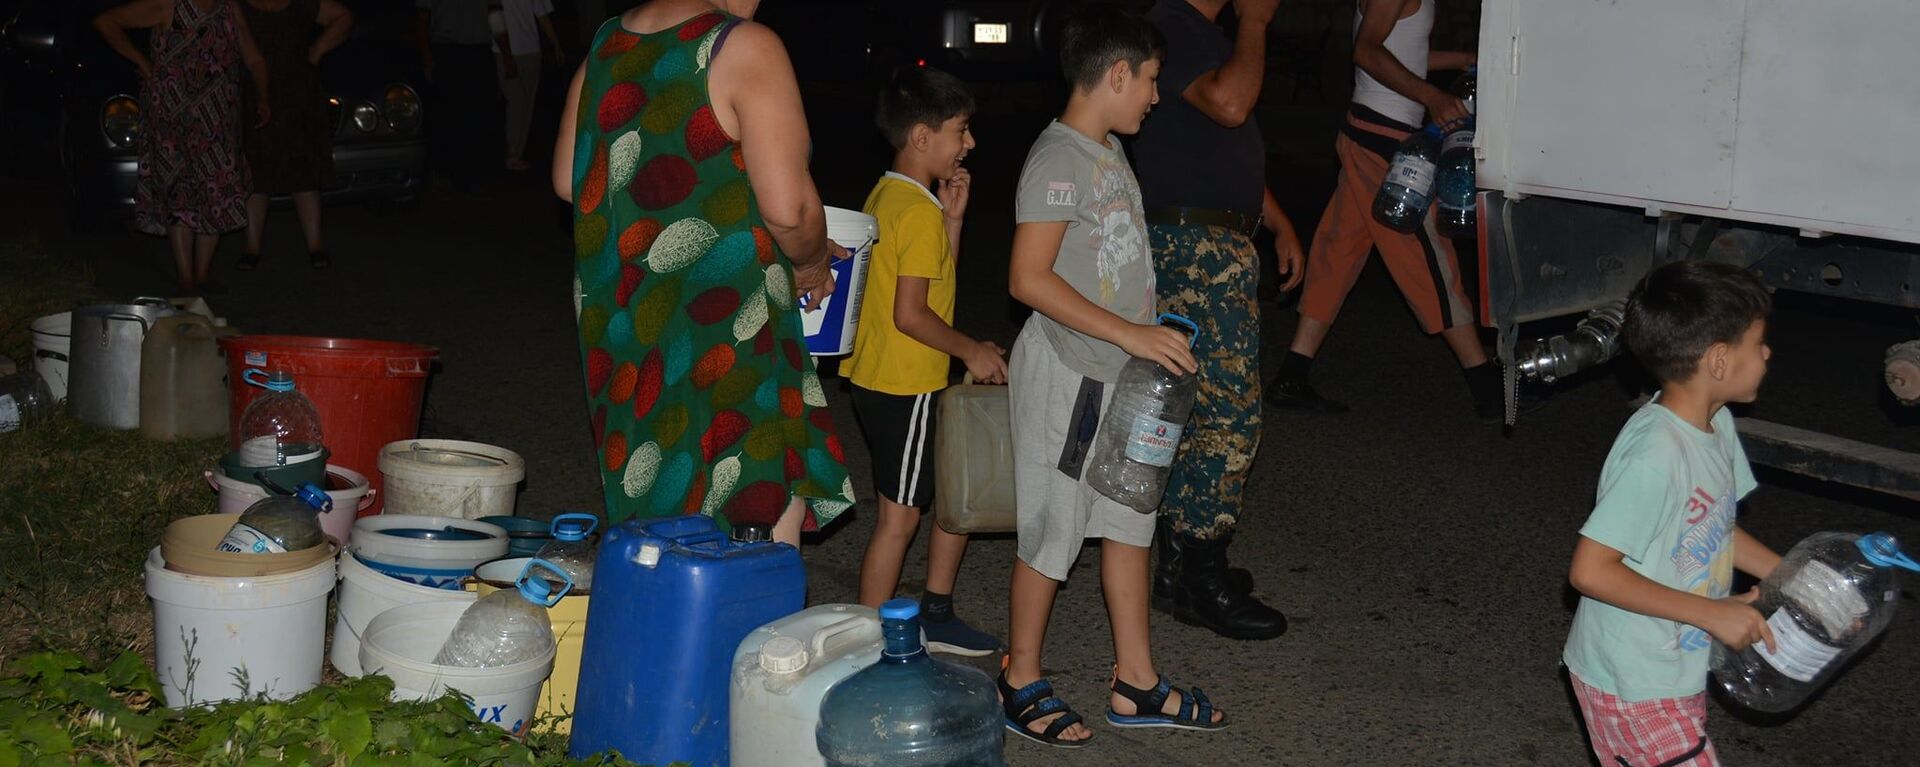 МЧС Карабаха помогает жителям с питьевой водой - Sputnik Արմենիա, 1920, 13.08.2021